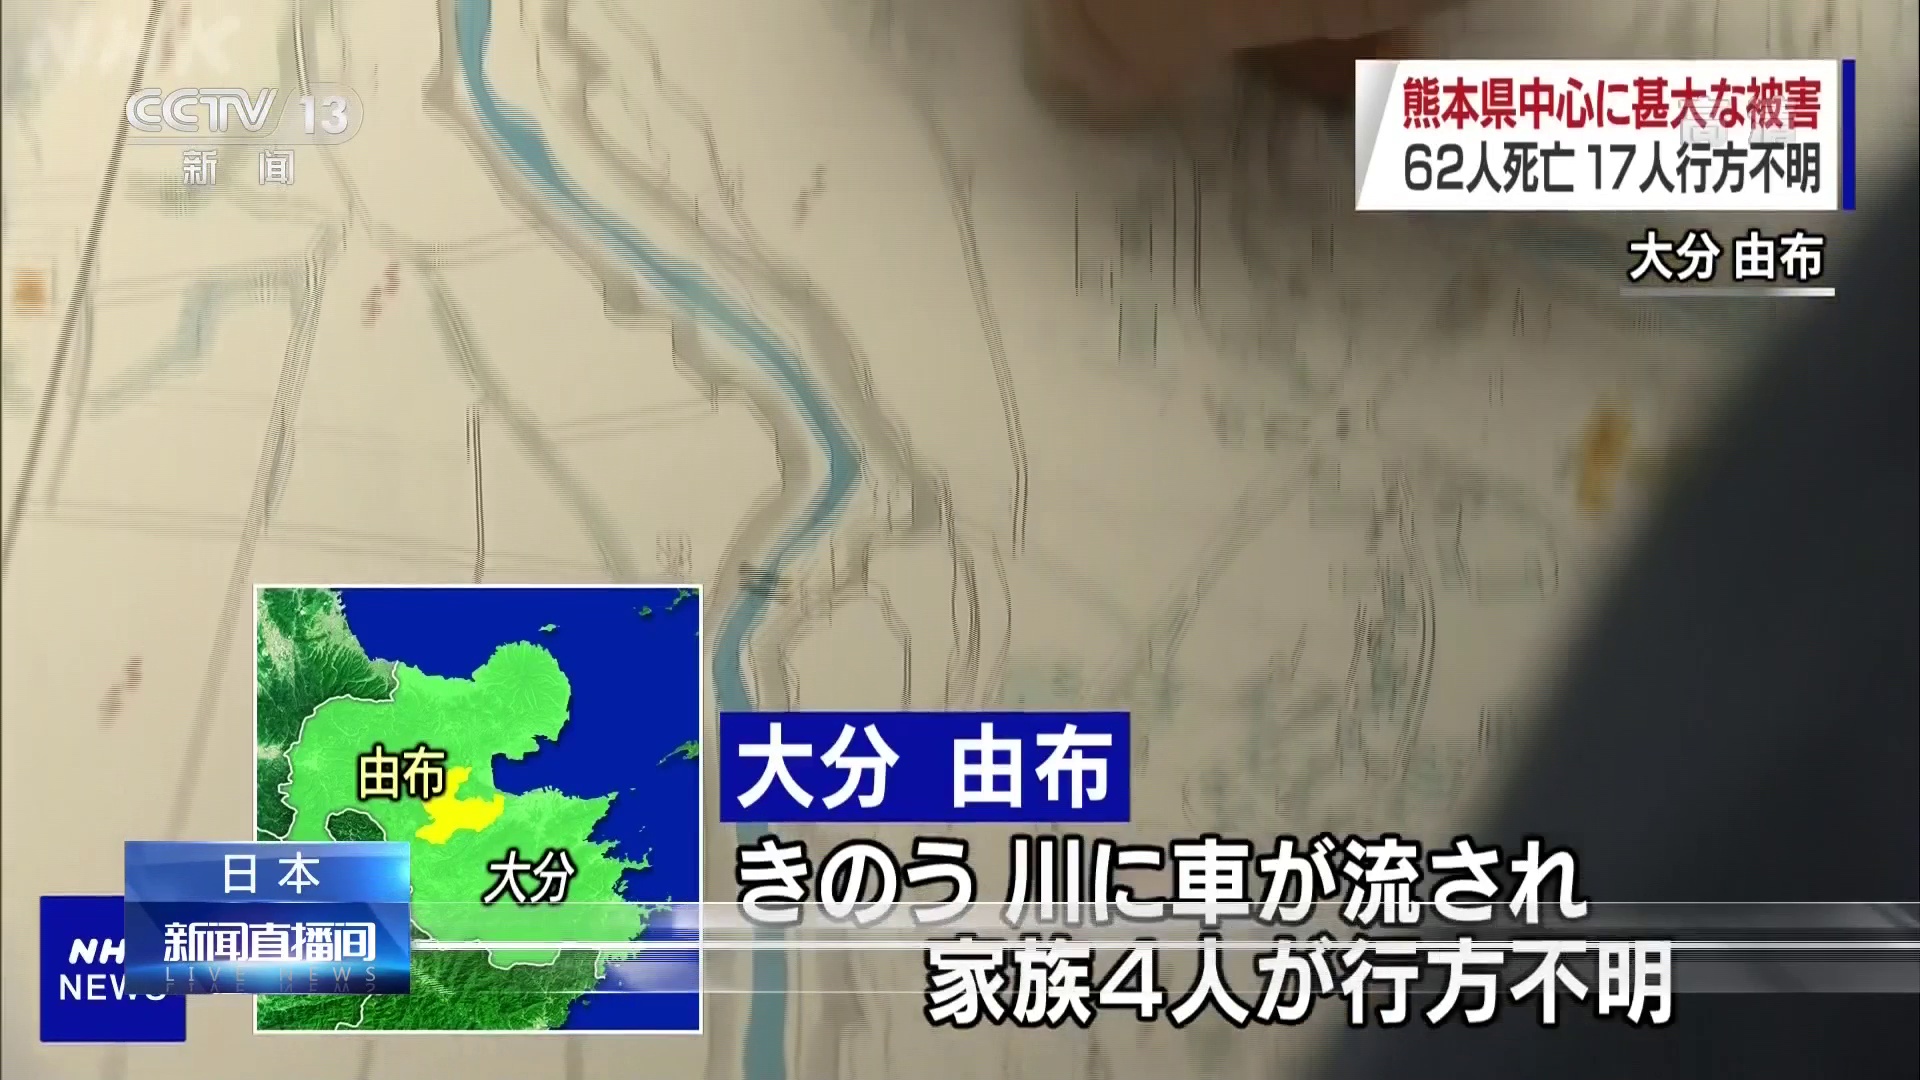 日本九州等地洪灾持续 死亡人数升至62人